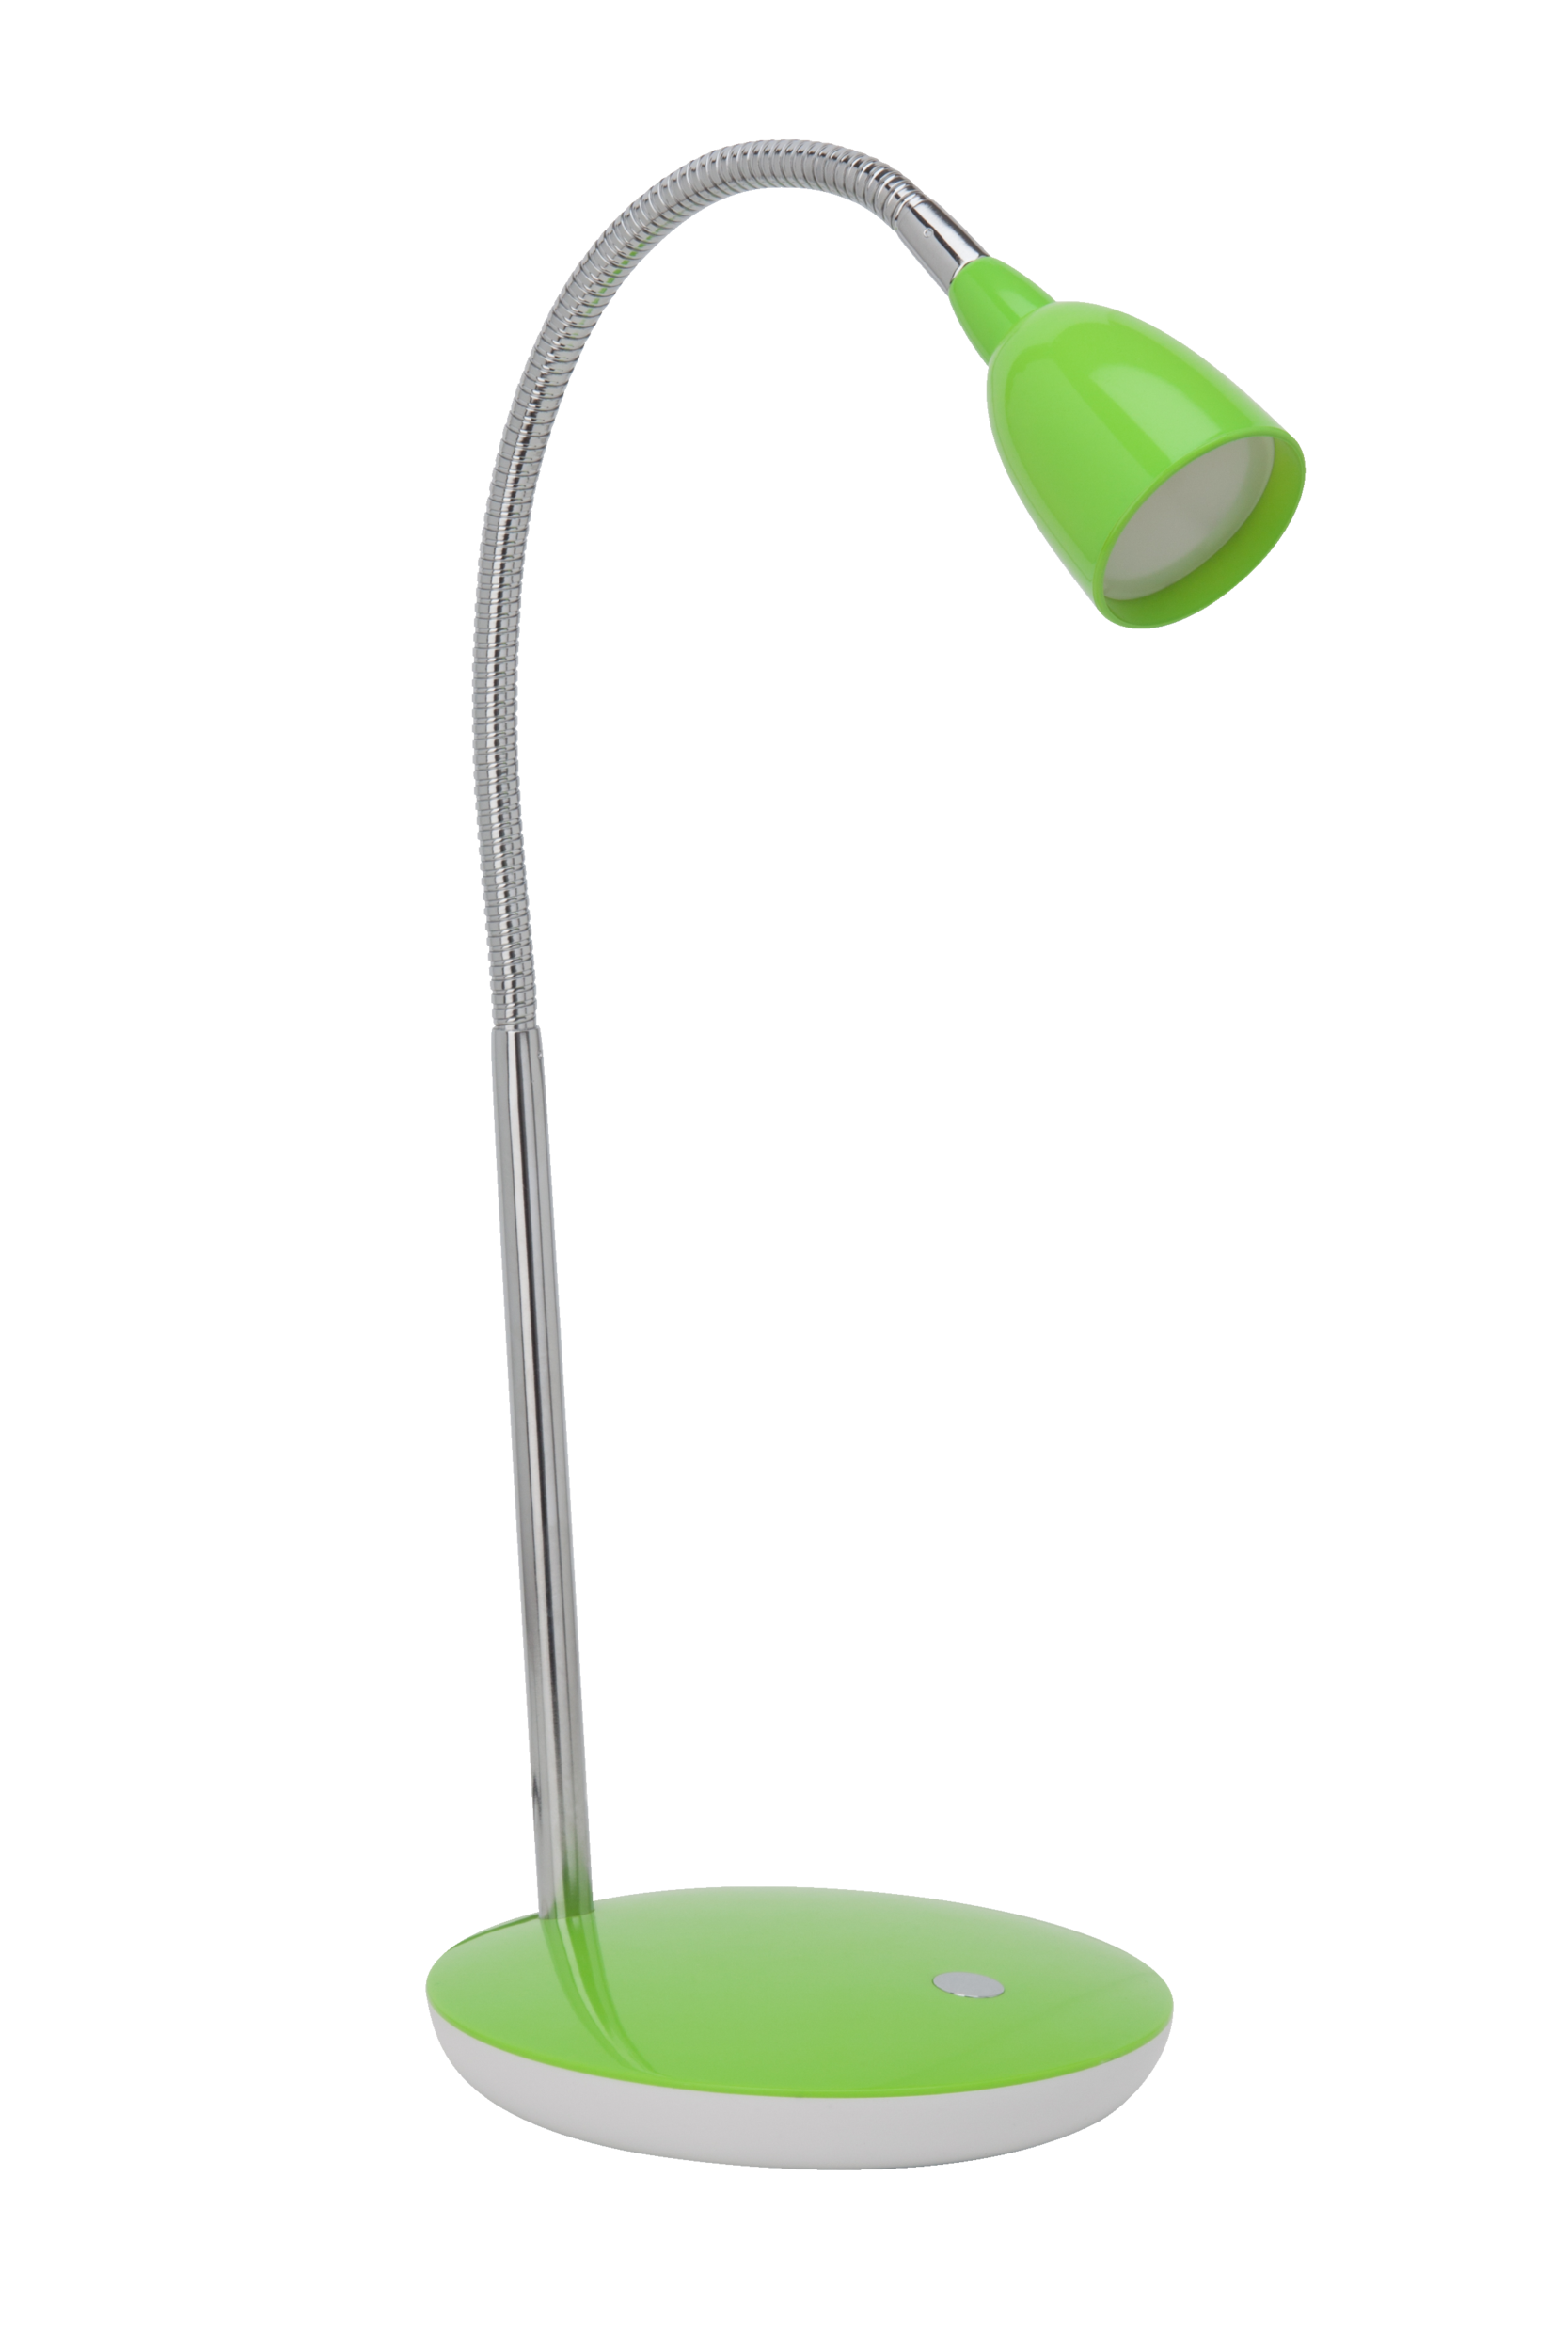 Flexible LED Tischlampe in grün · Lightbox Leuchten & Licht GmbH